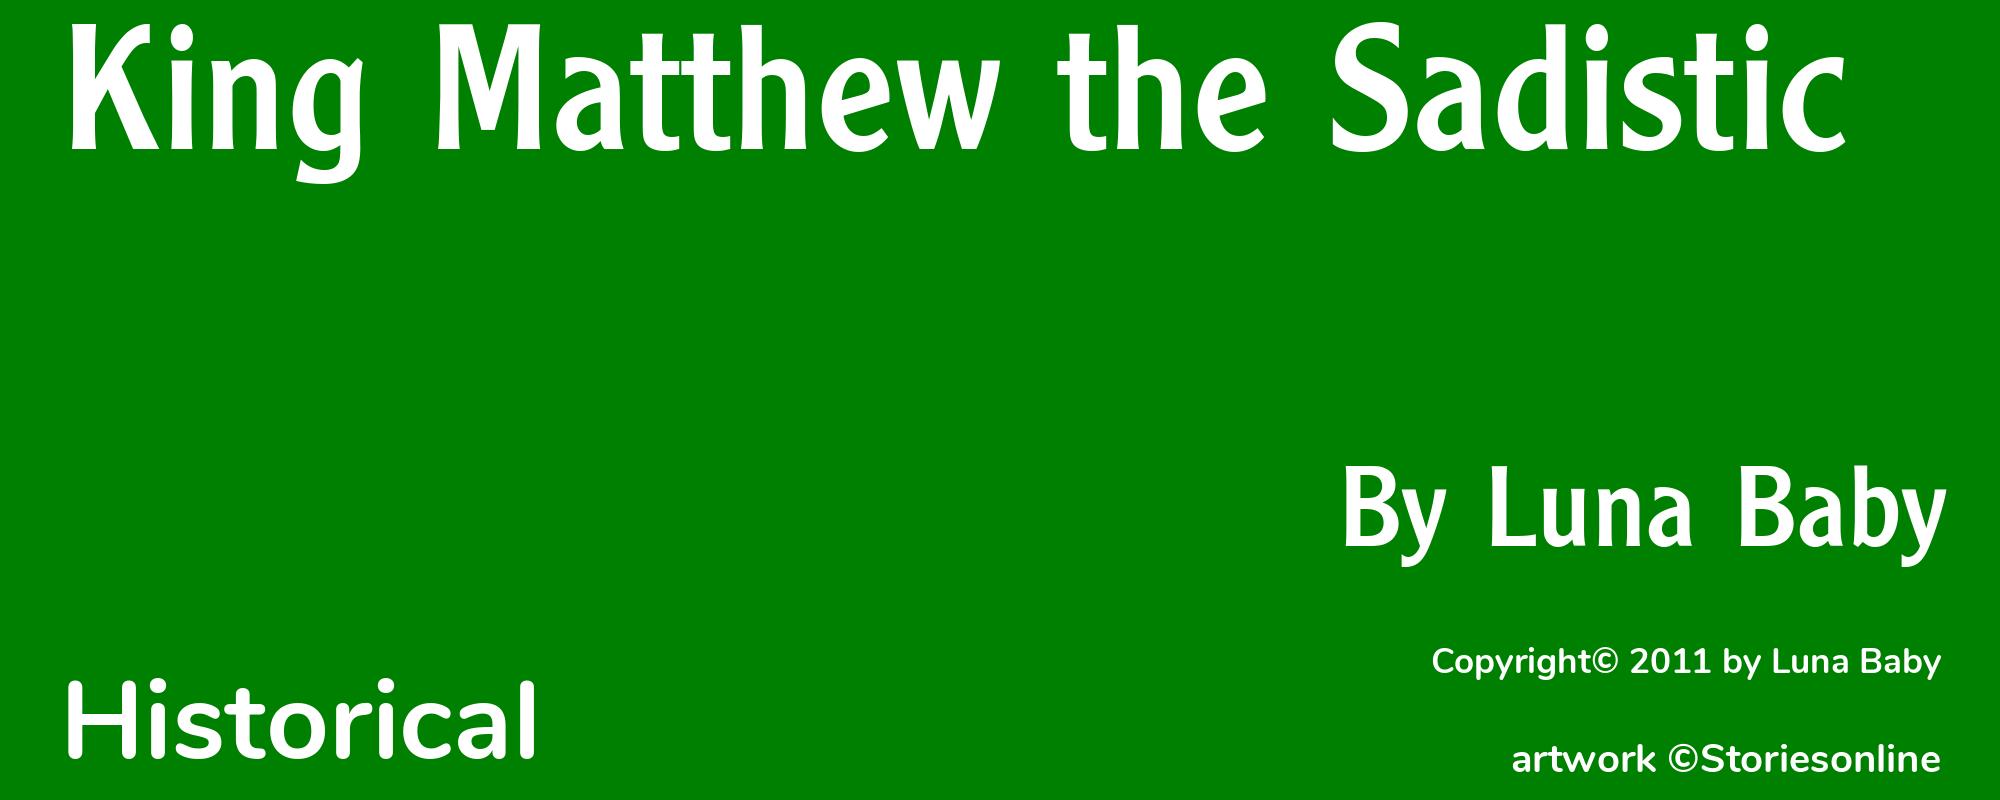 King Matthew the Sadistic - Cover